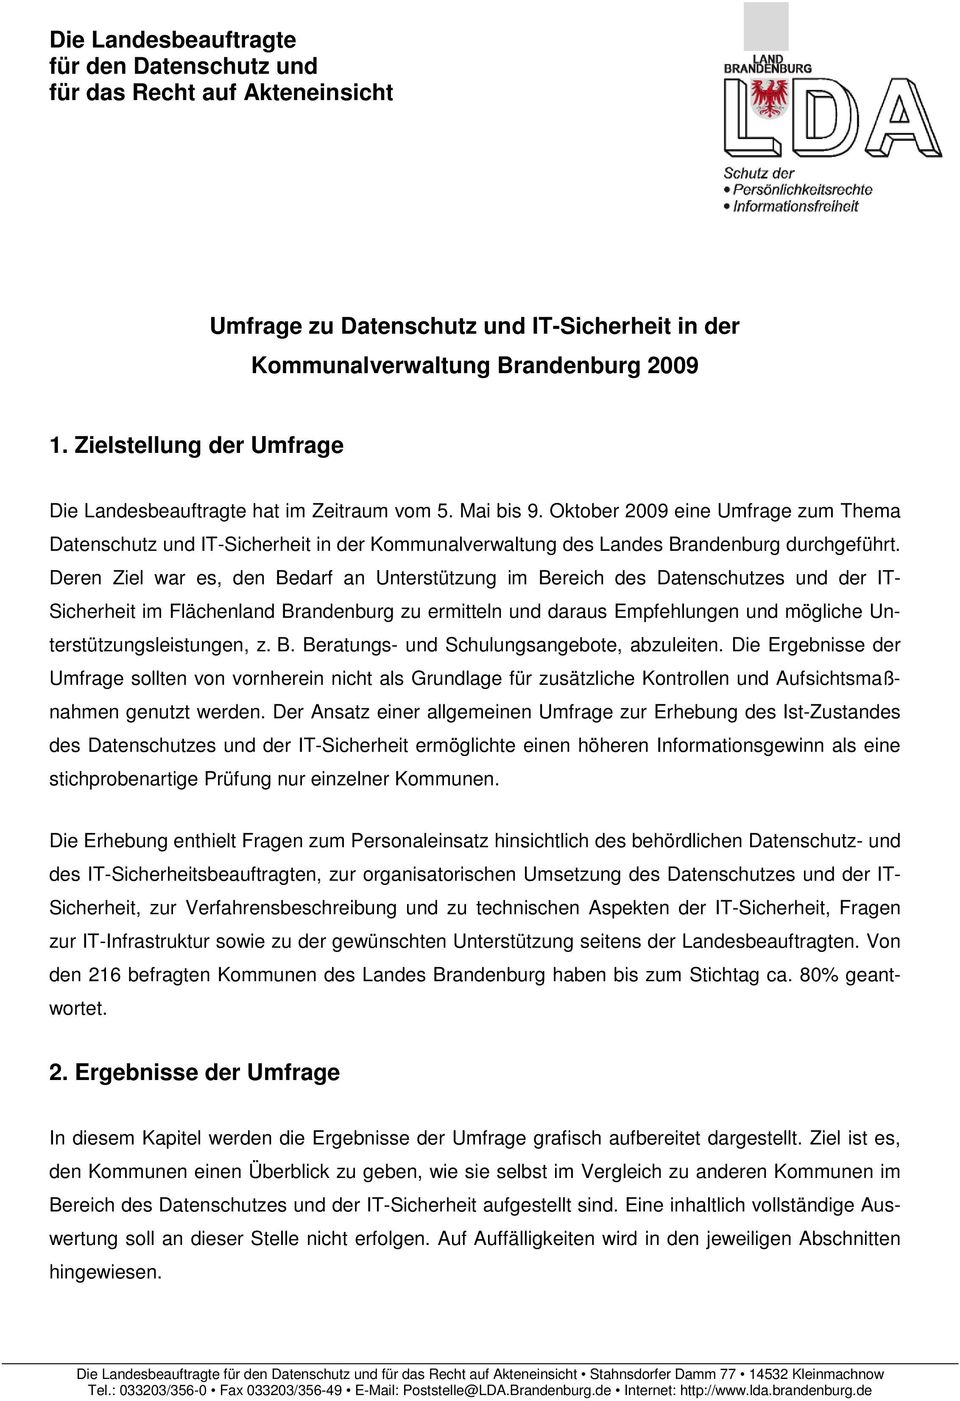 Oktober 29 eine Umfrage zum Thema Datenschutz und IT-Sicherheit in der Kommunalverwaltung des Landes Brandenburg durchgeführt.